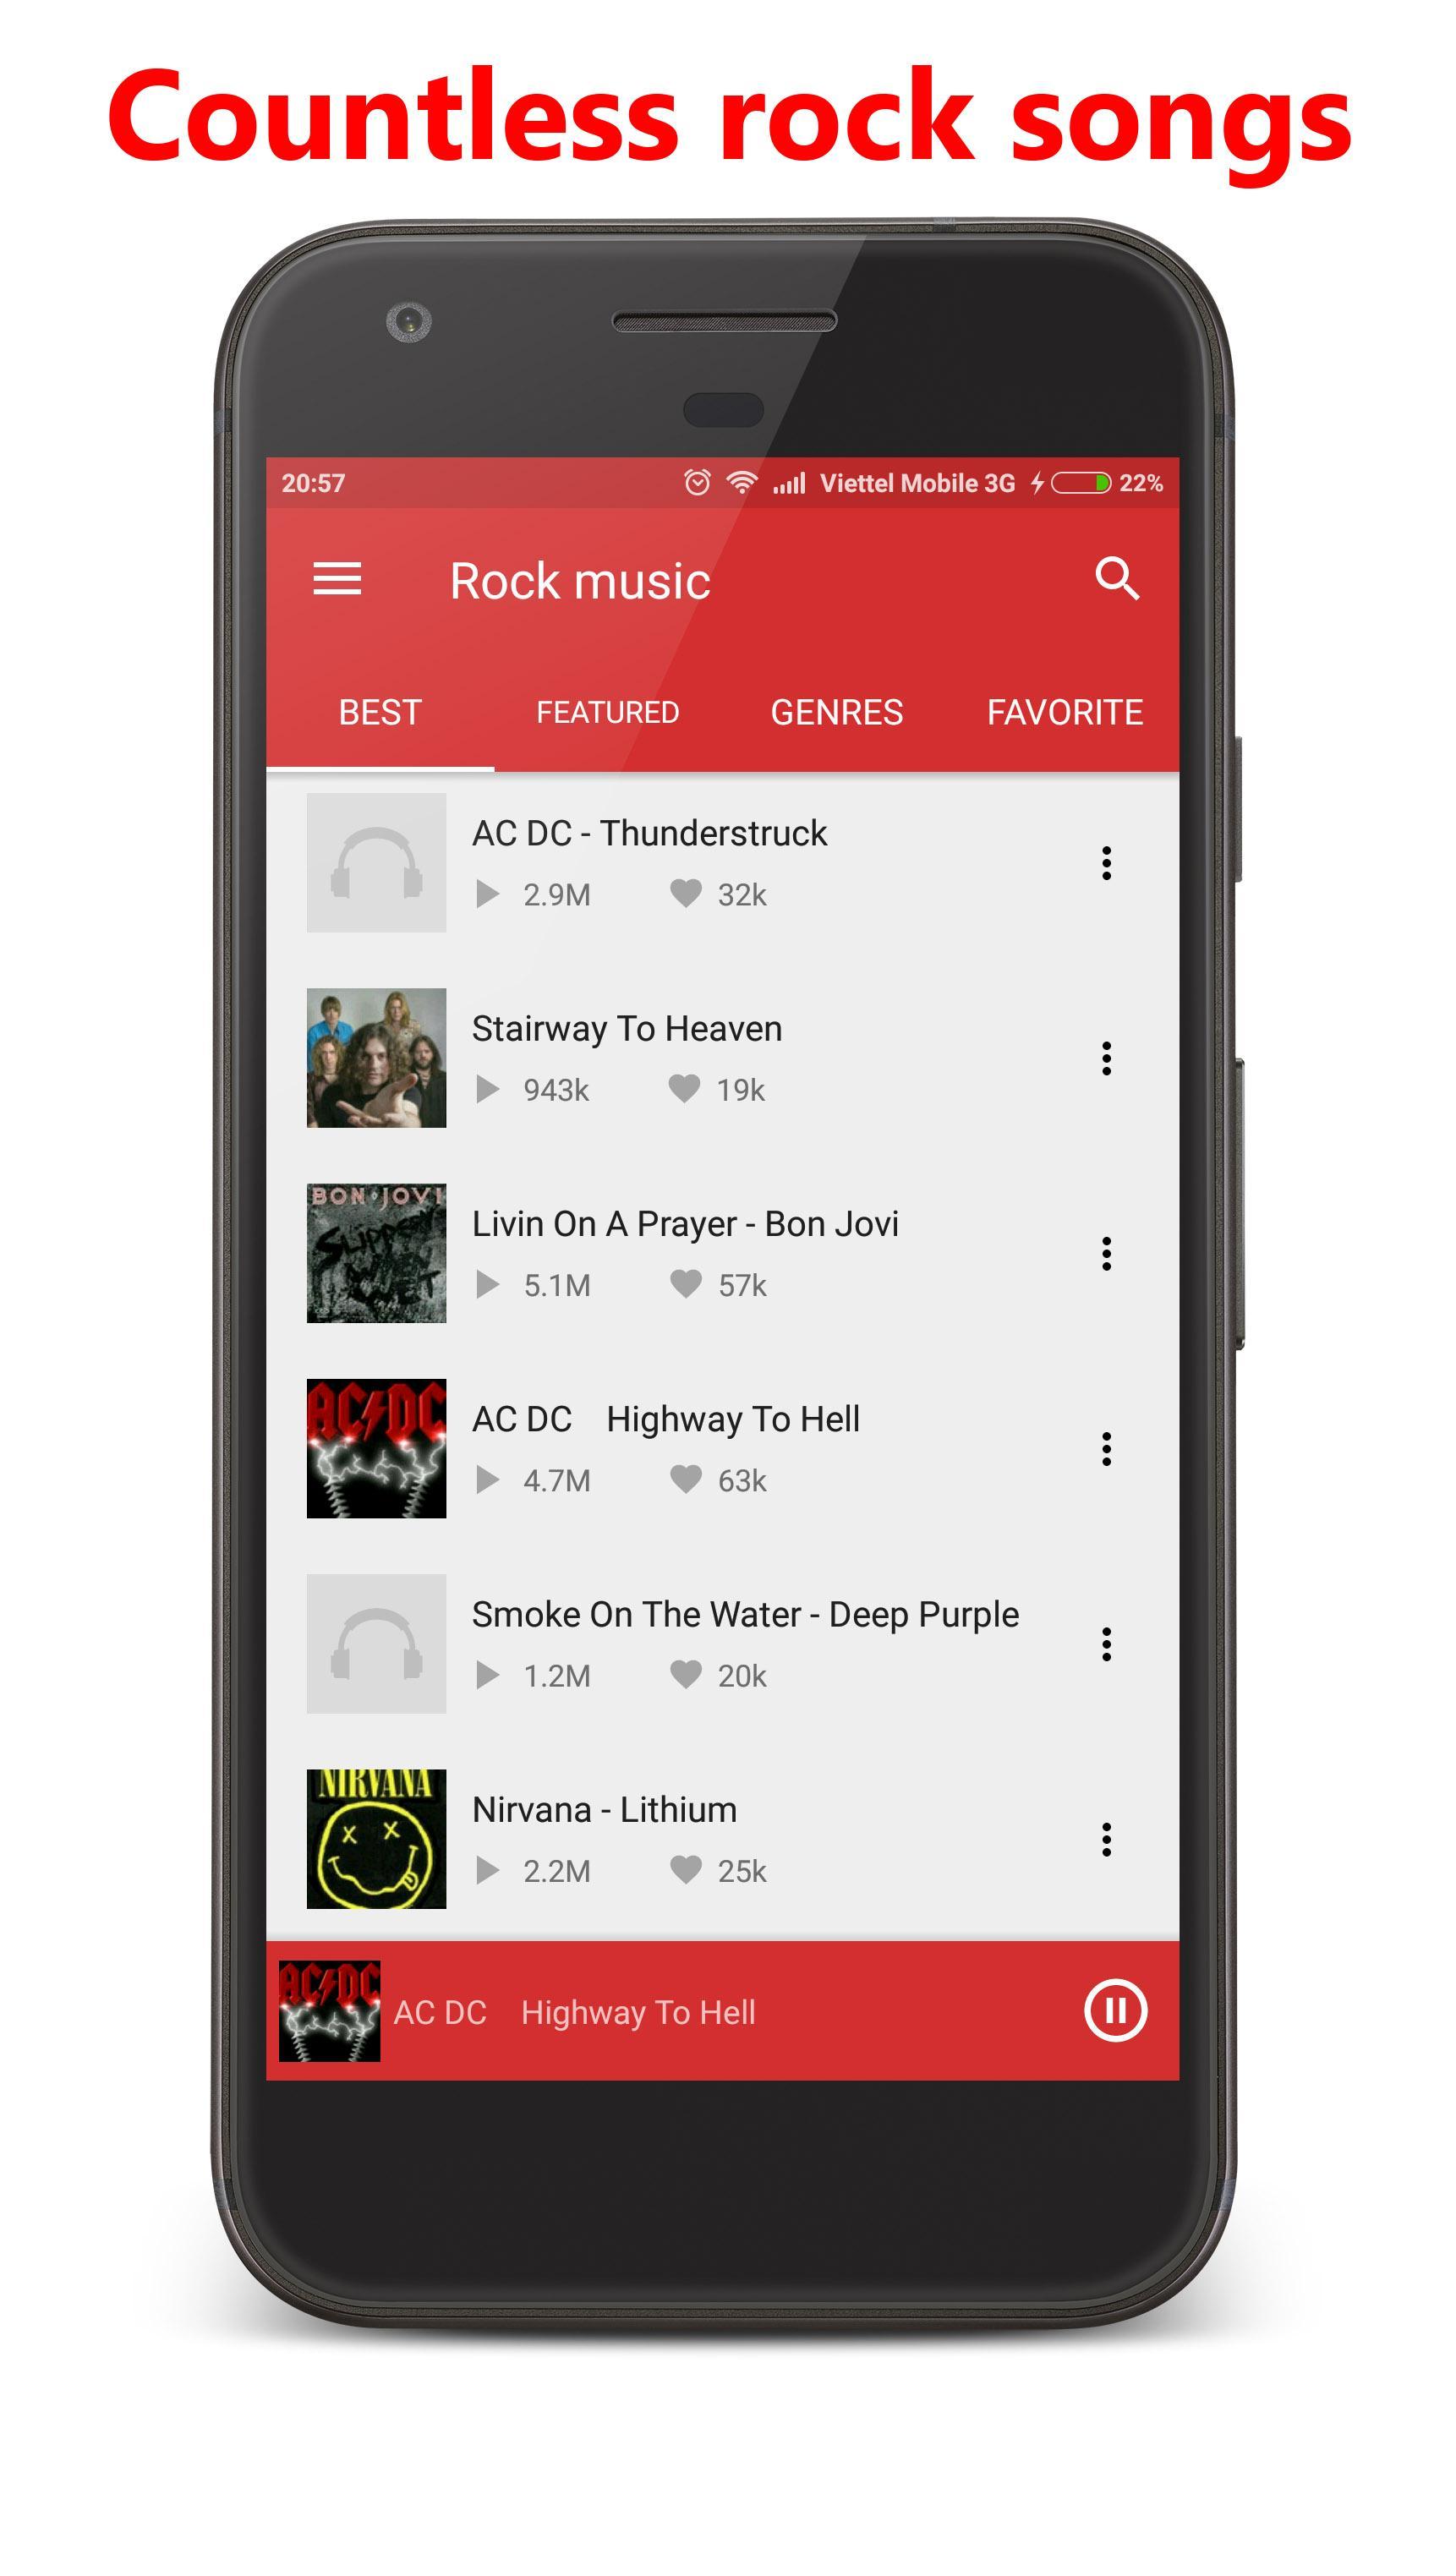 Rocks приложение